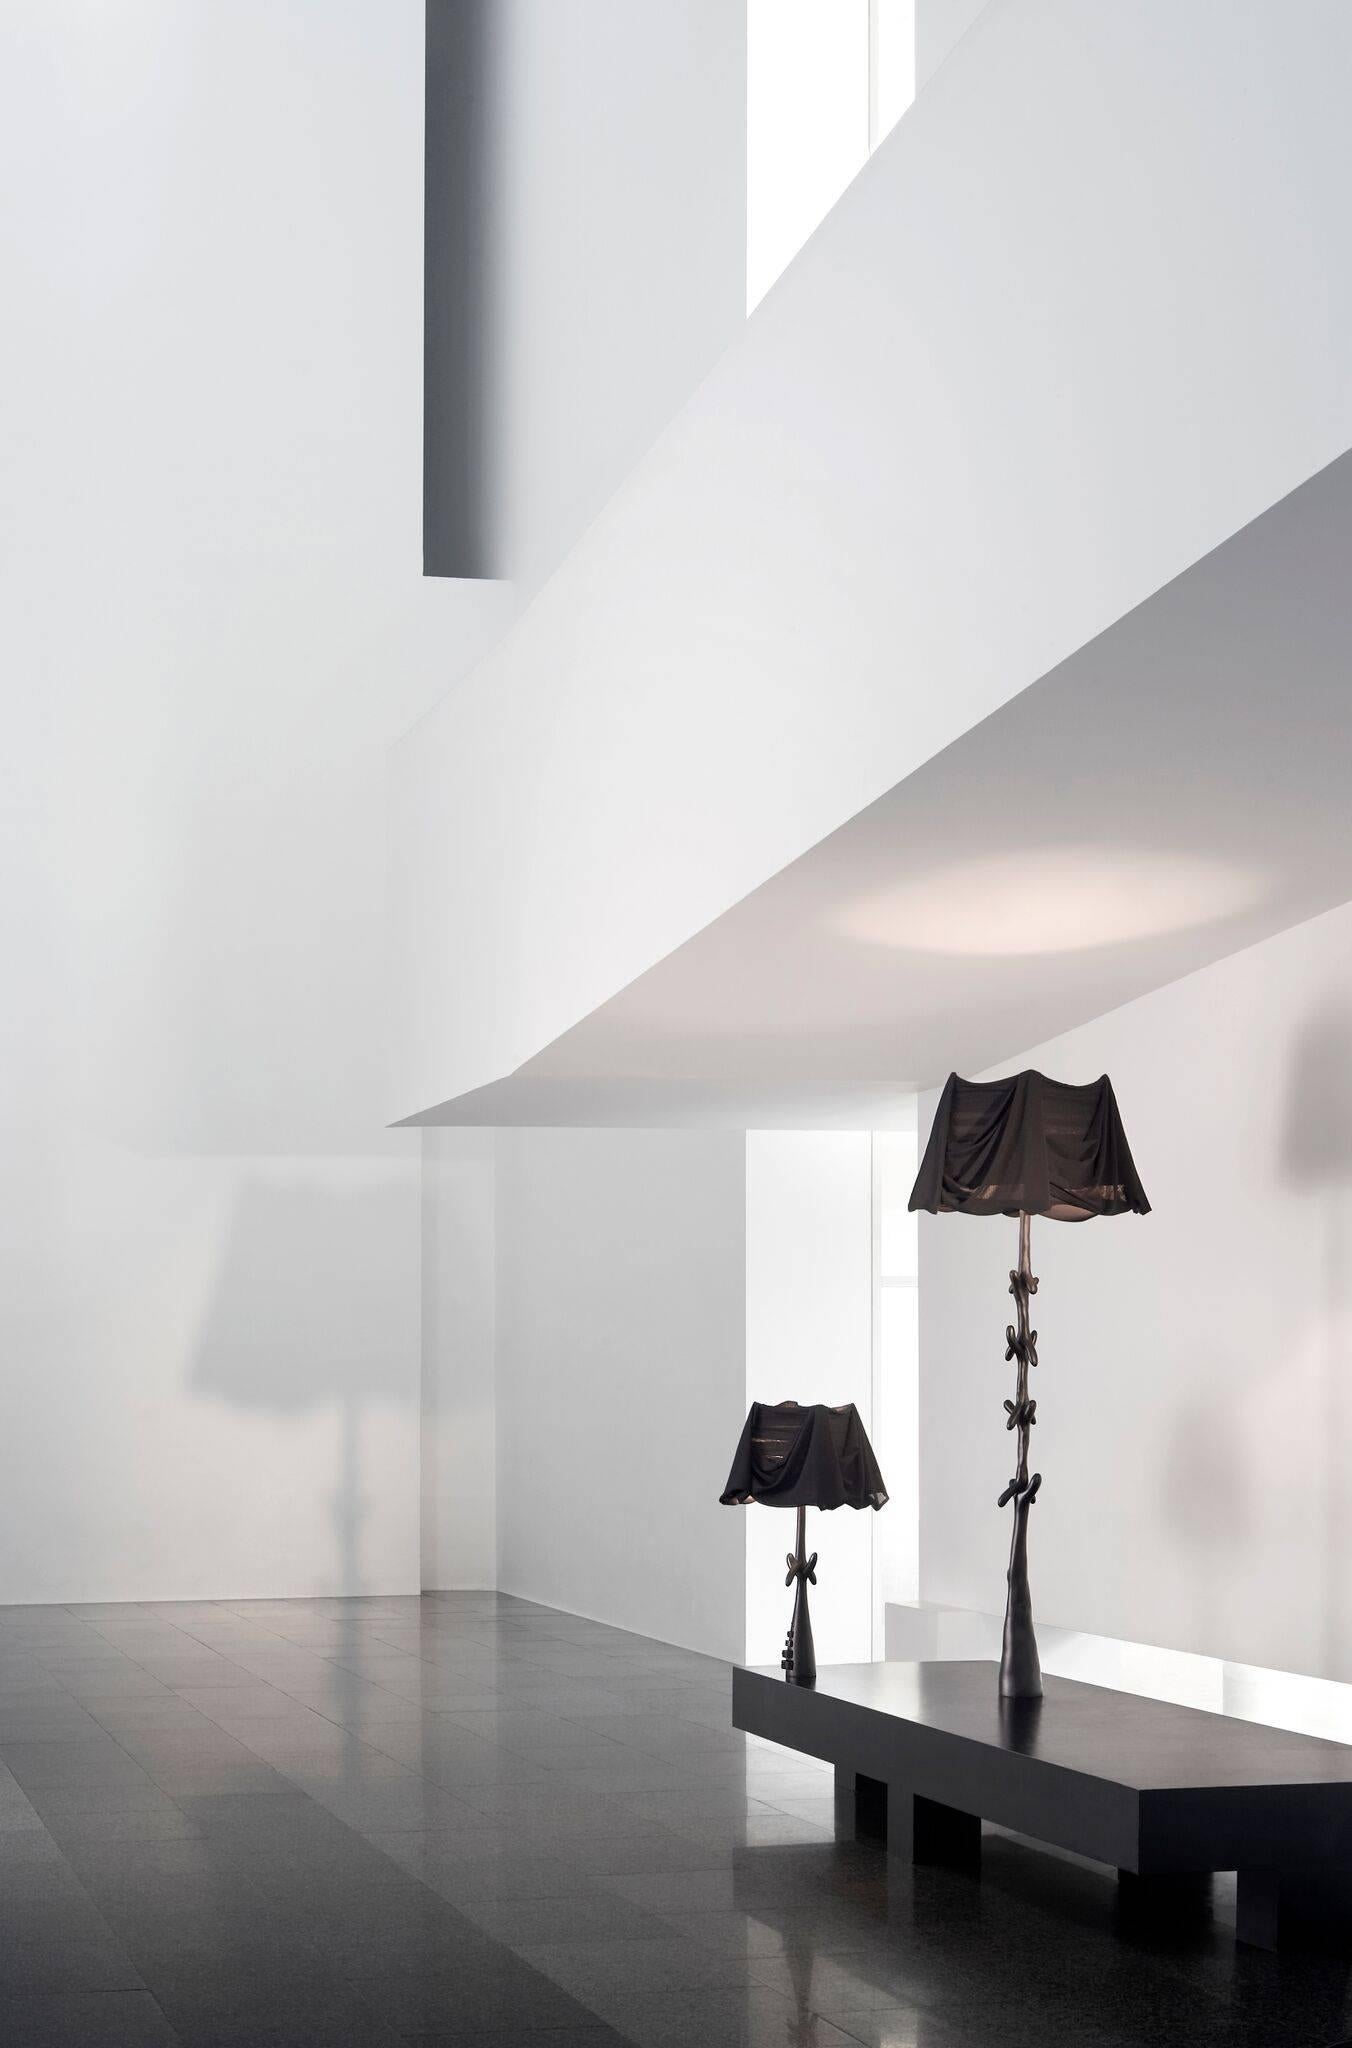 Lampes Bracelli conçues par Salvador Dali et fabriquées par les meubles BD à Barcelone.

Ensemble de lampadaires et de lampes de table.

Edition limitée du Label noir.

Une lampe sur pied inspirée des dessins de Dalí pour Jean Michel Frank.